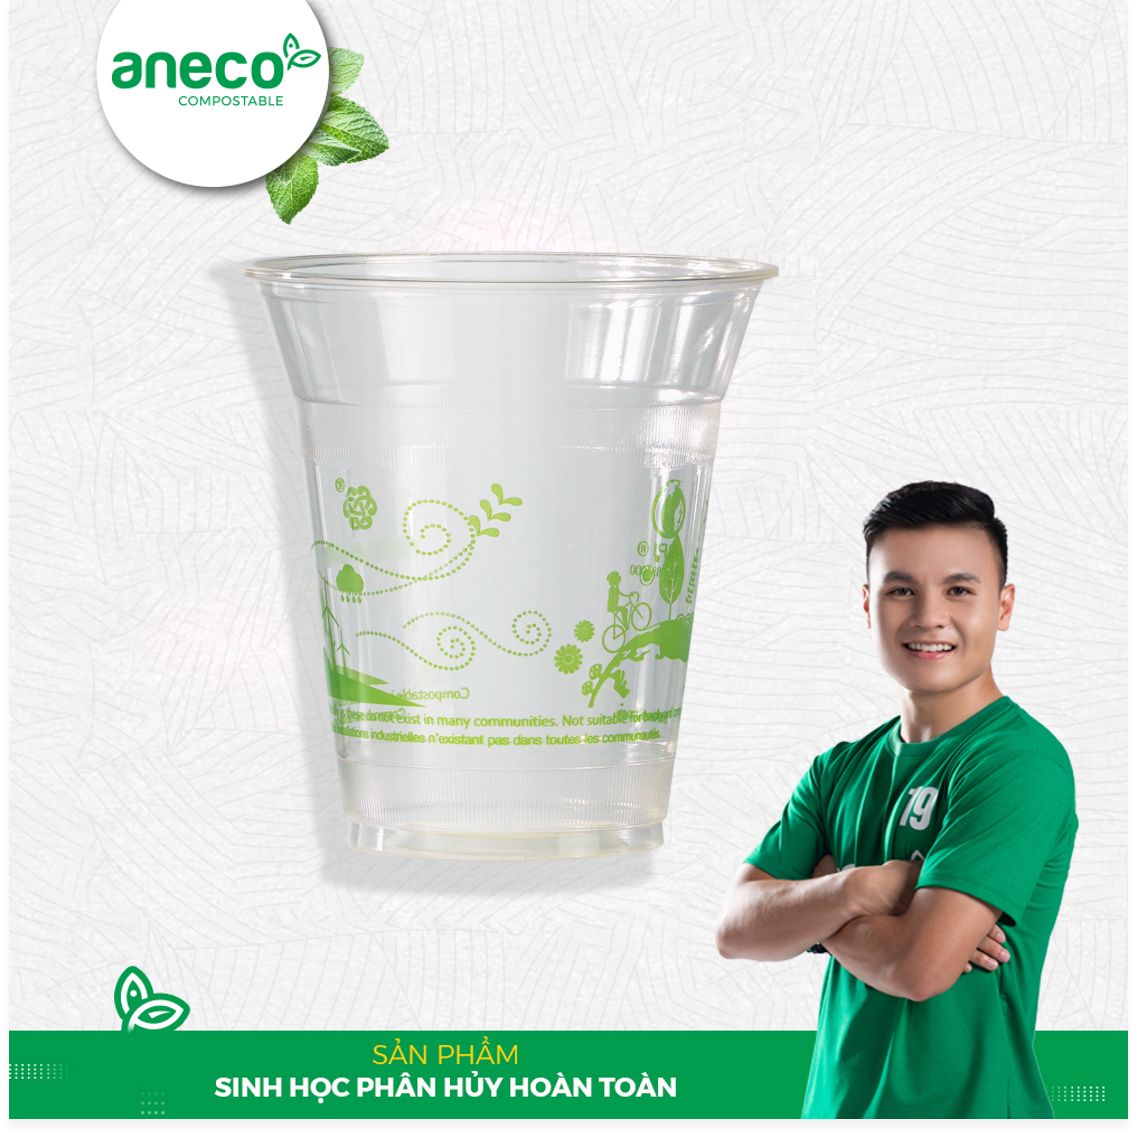 Cốc lạnh AnEco có thể thay thế hoàn toàn cốc nhựa truyền thống